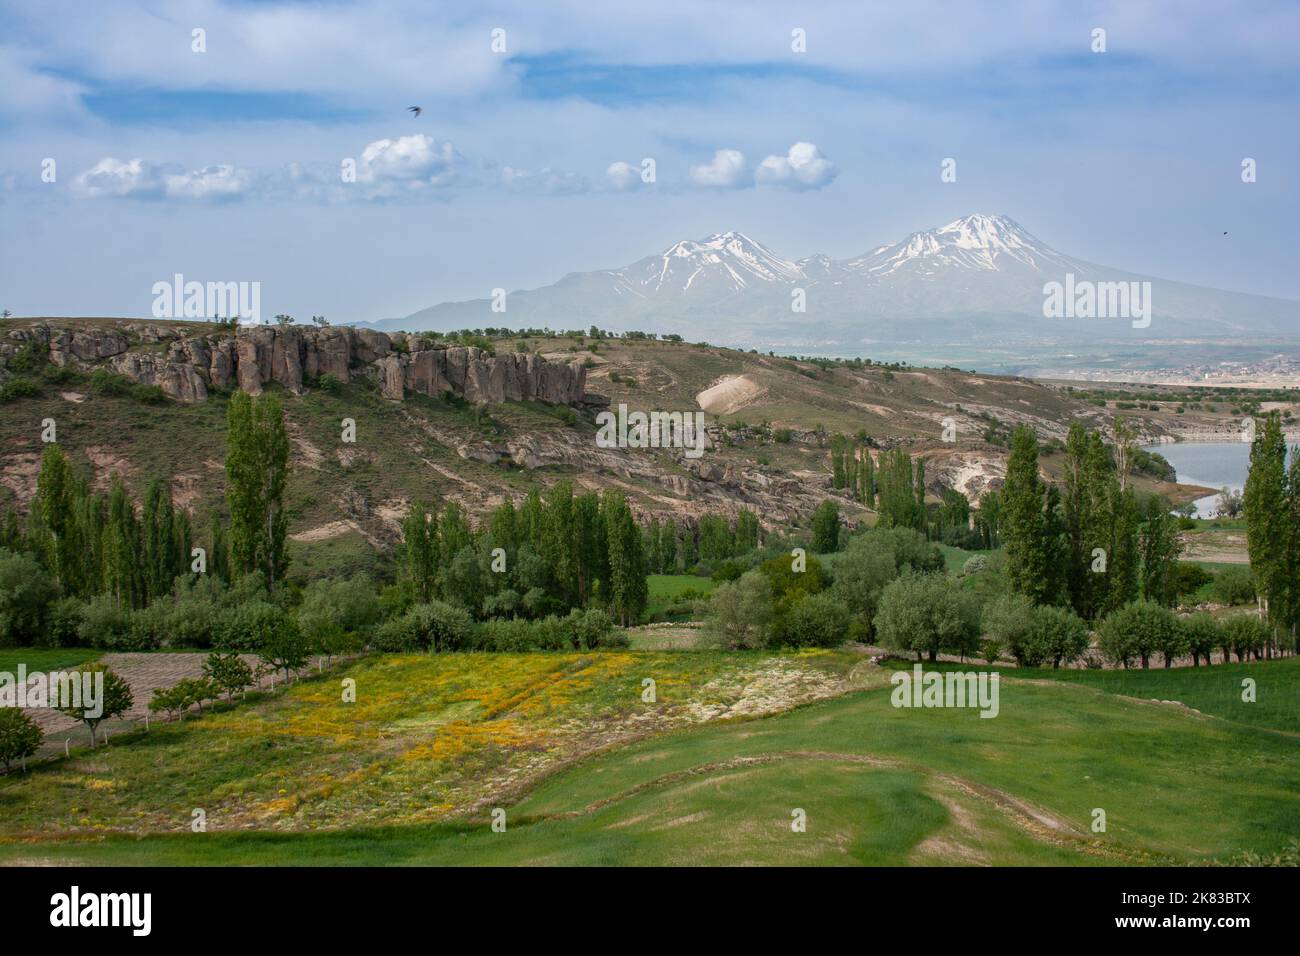 Paysage rural dans la région de la Cappadoce en Turquie Banque D'Images